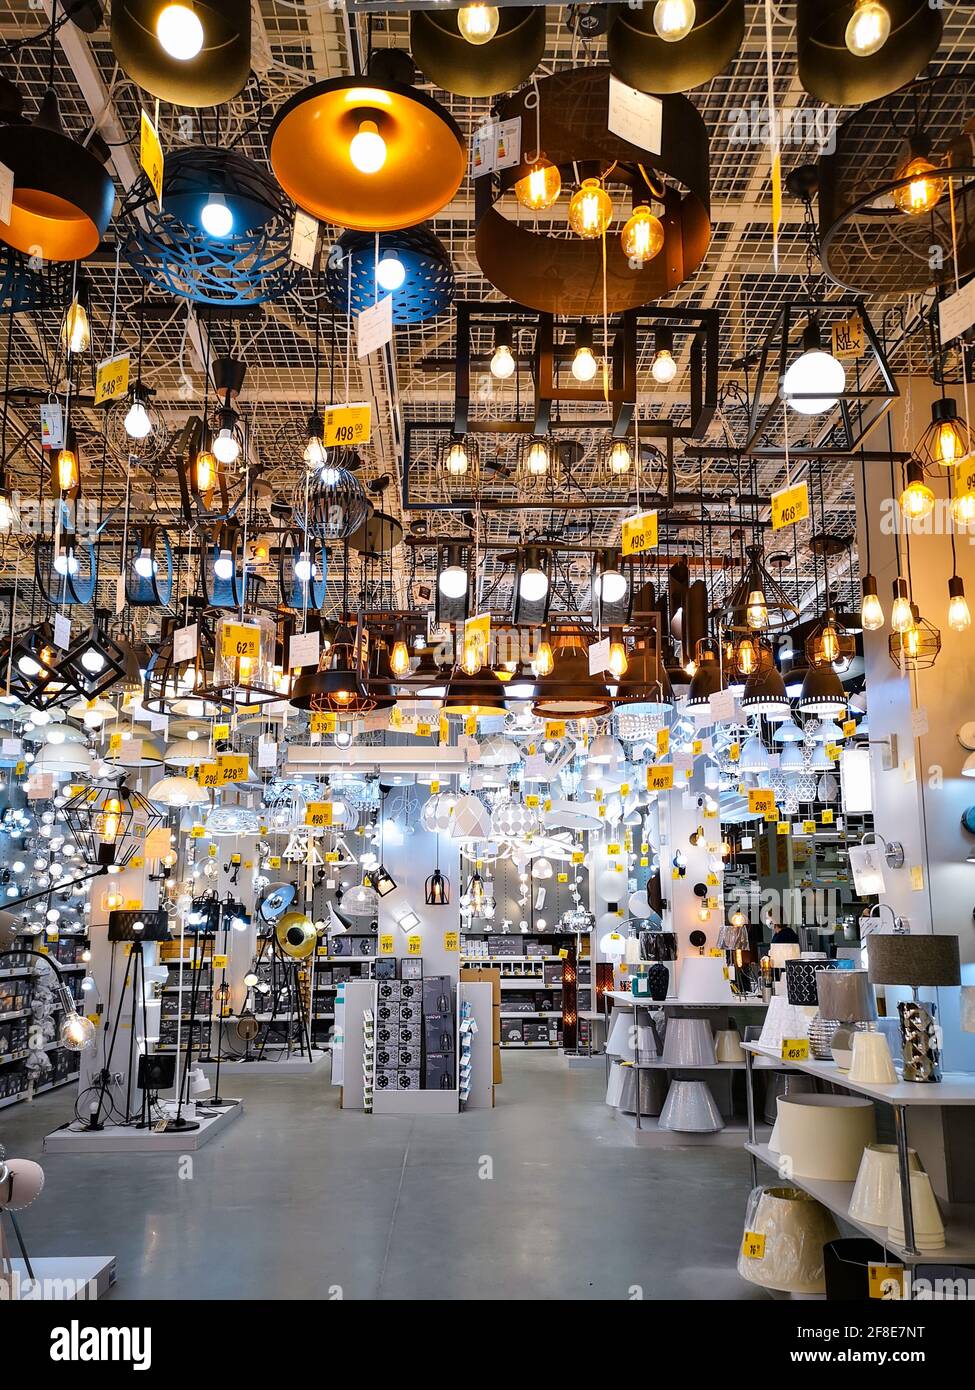 Breslau, Polen - 6 2020. Juni: Innenraum der Halle voller Lampen und  Leuchten im Wohnaccessoires-Shop Stockfotografie - Alamy